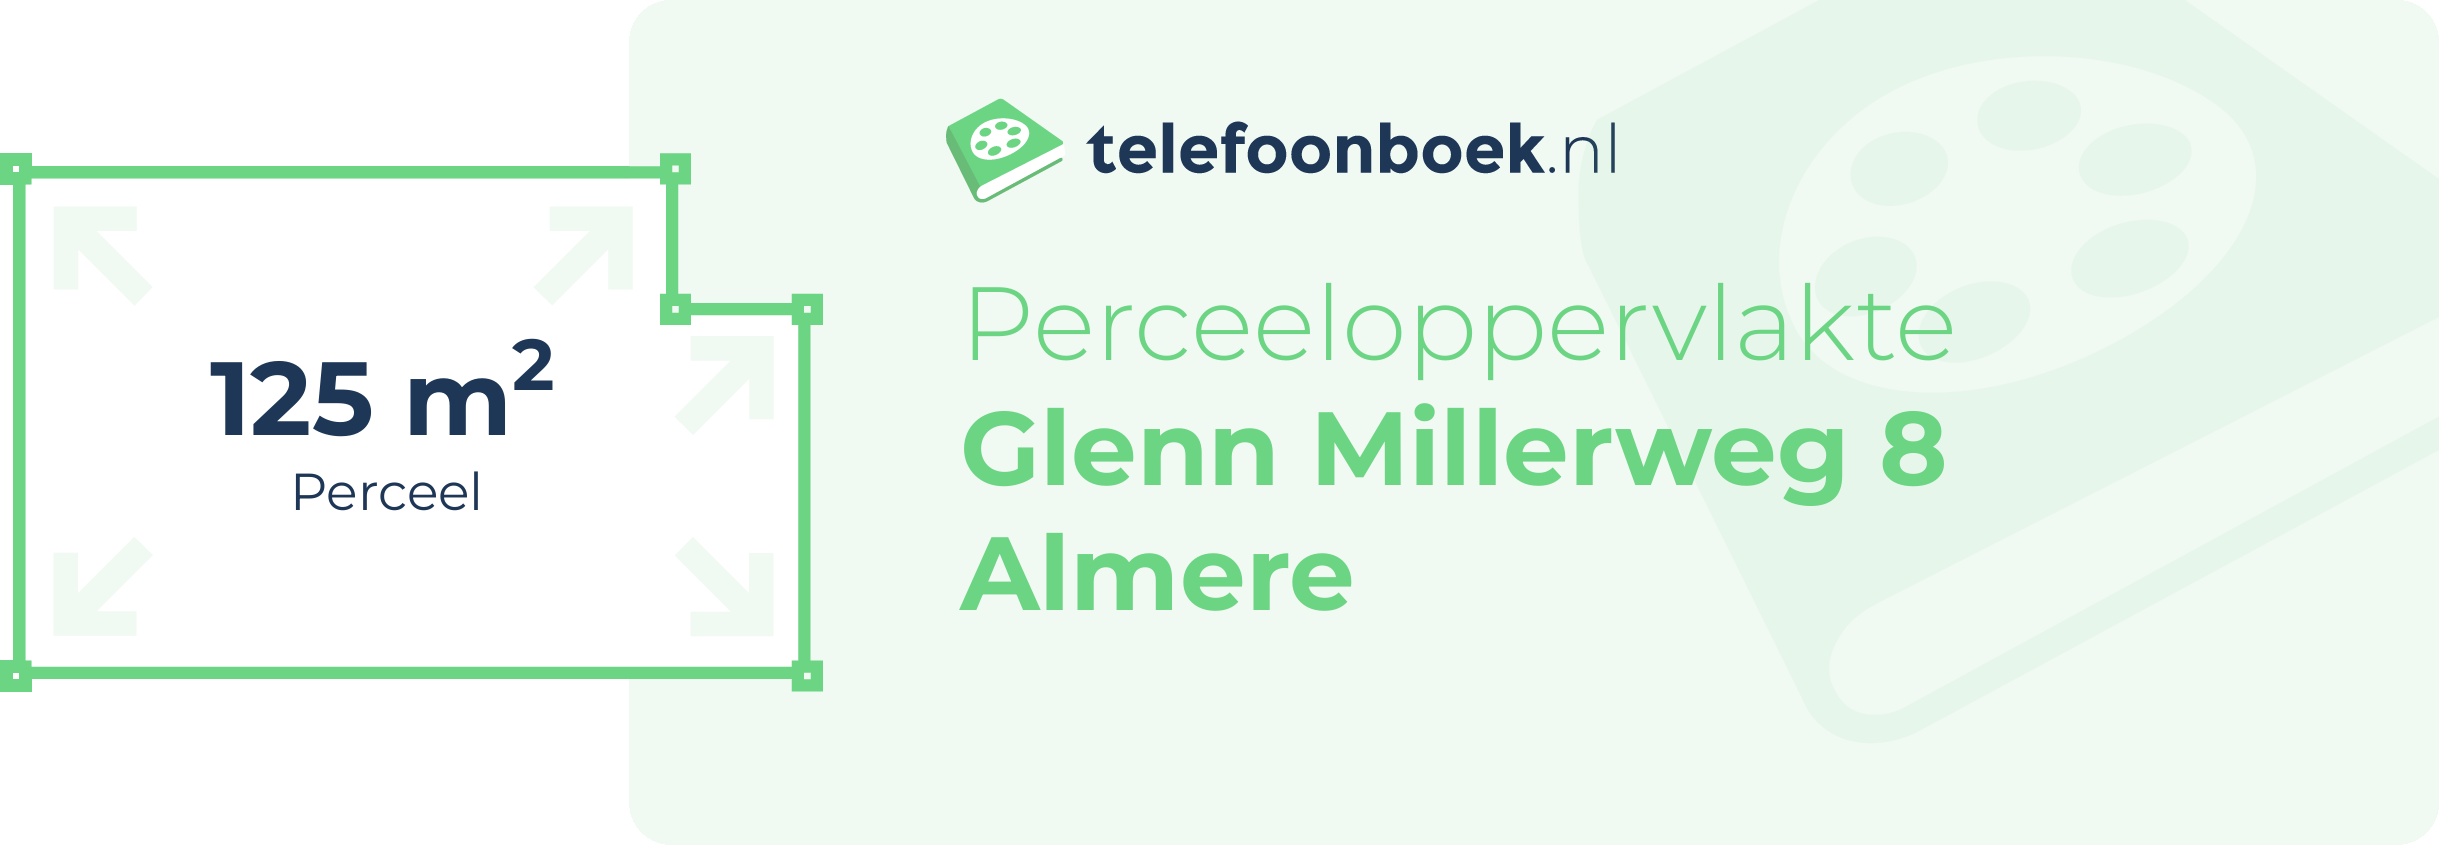 Perceeloppervlakte Glenn Millerweg 8 Almere